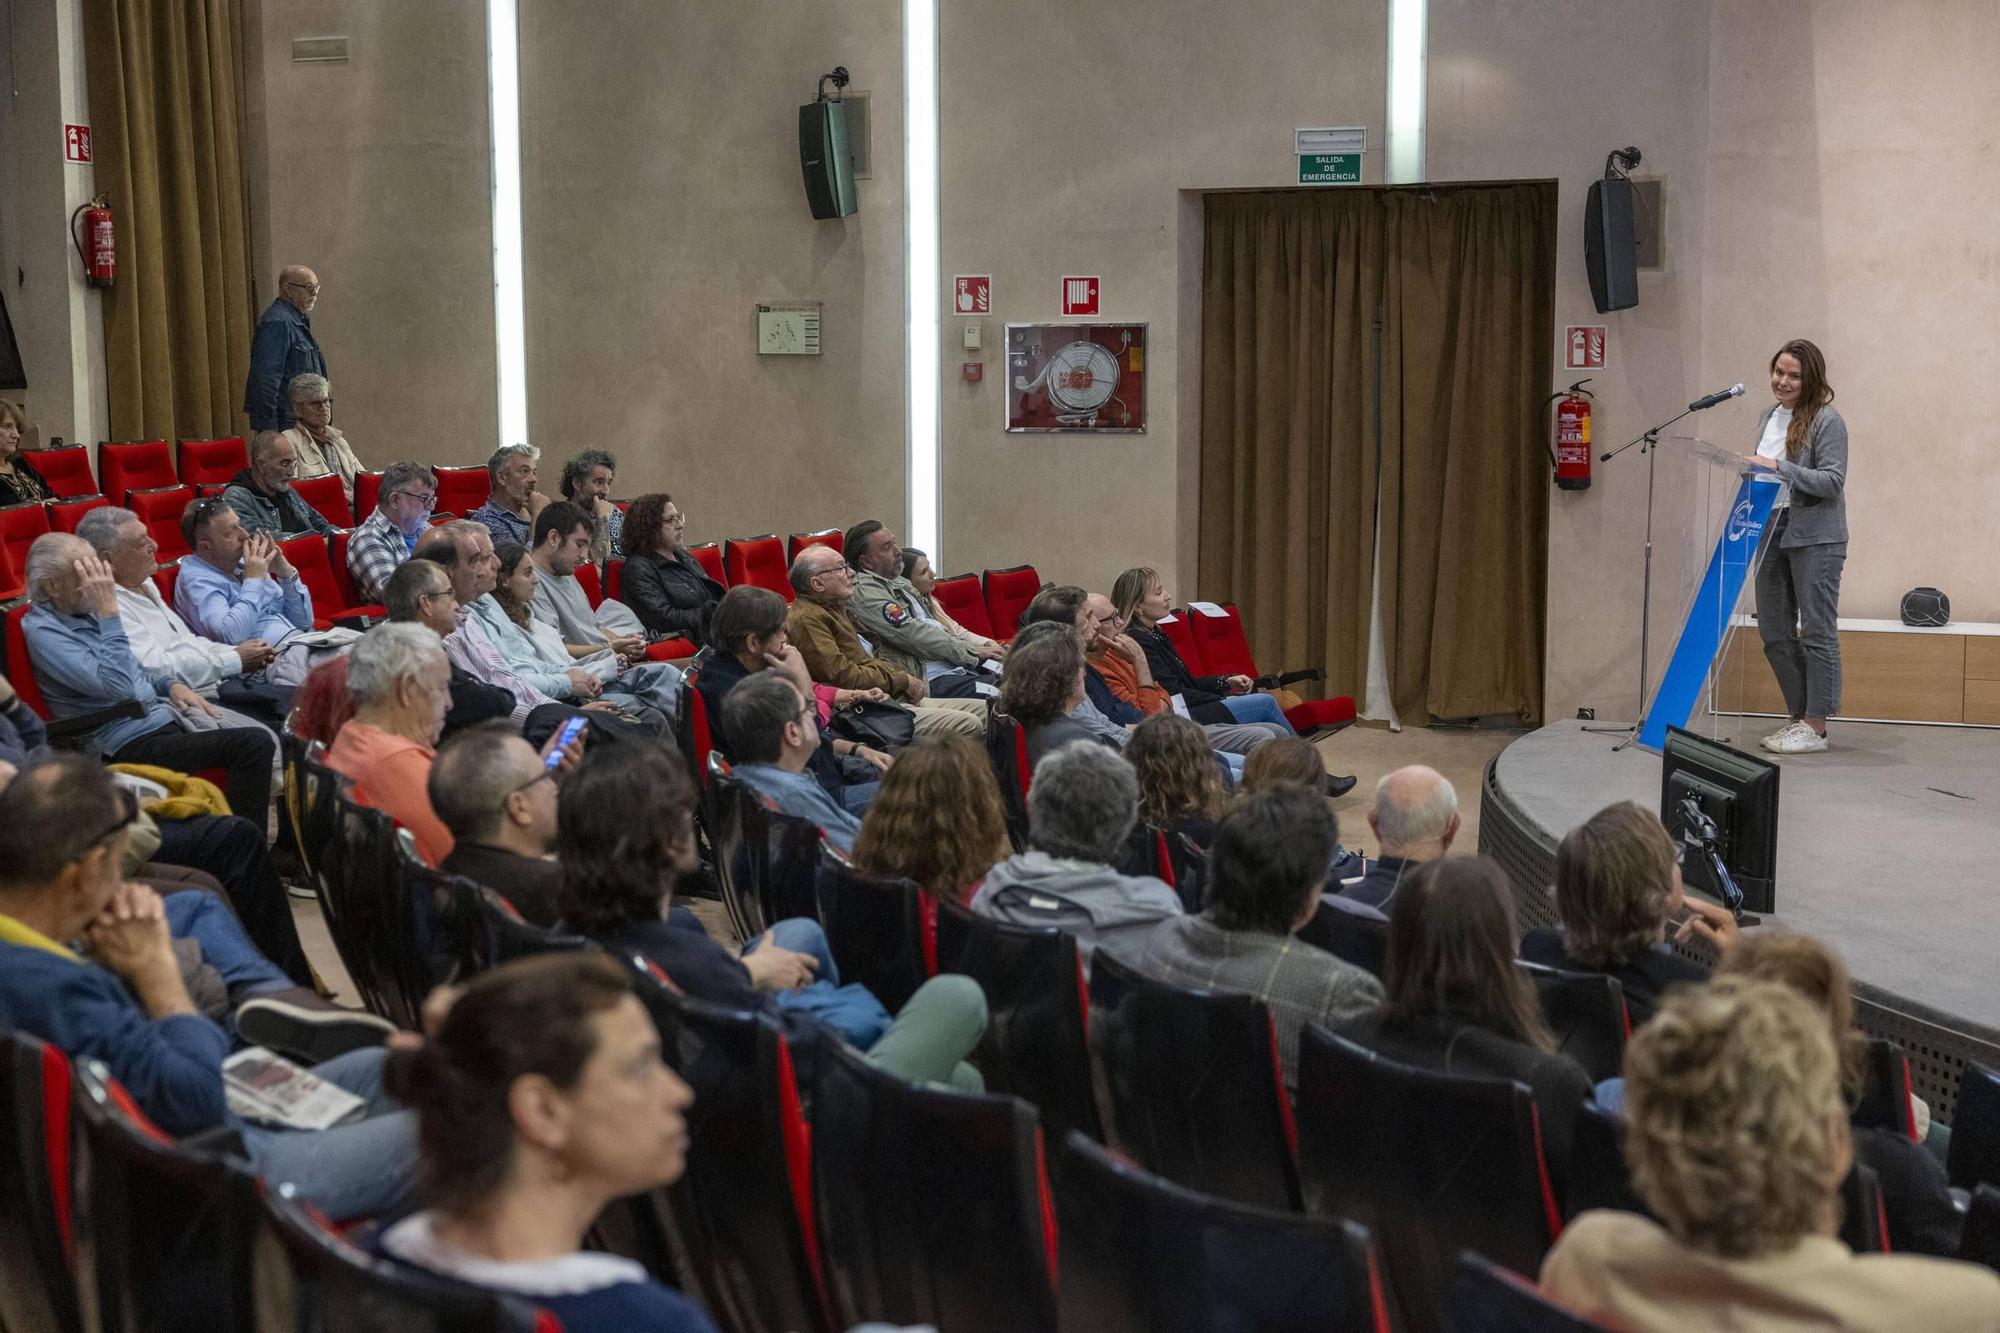 Preestreno del documental sobre Torrelló en el Club Diario de Mallorca